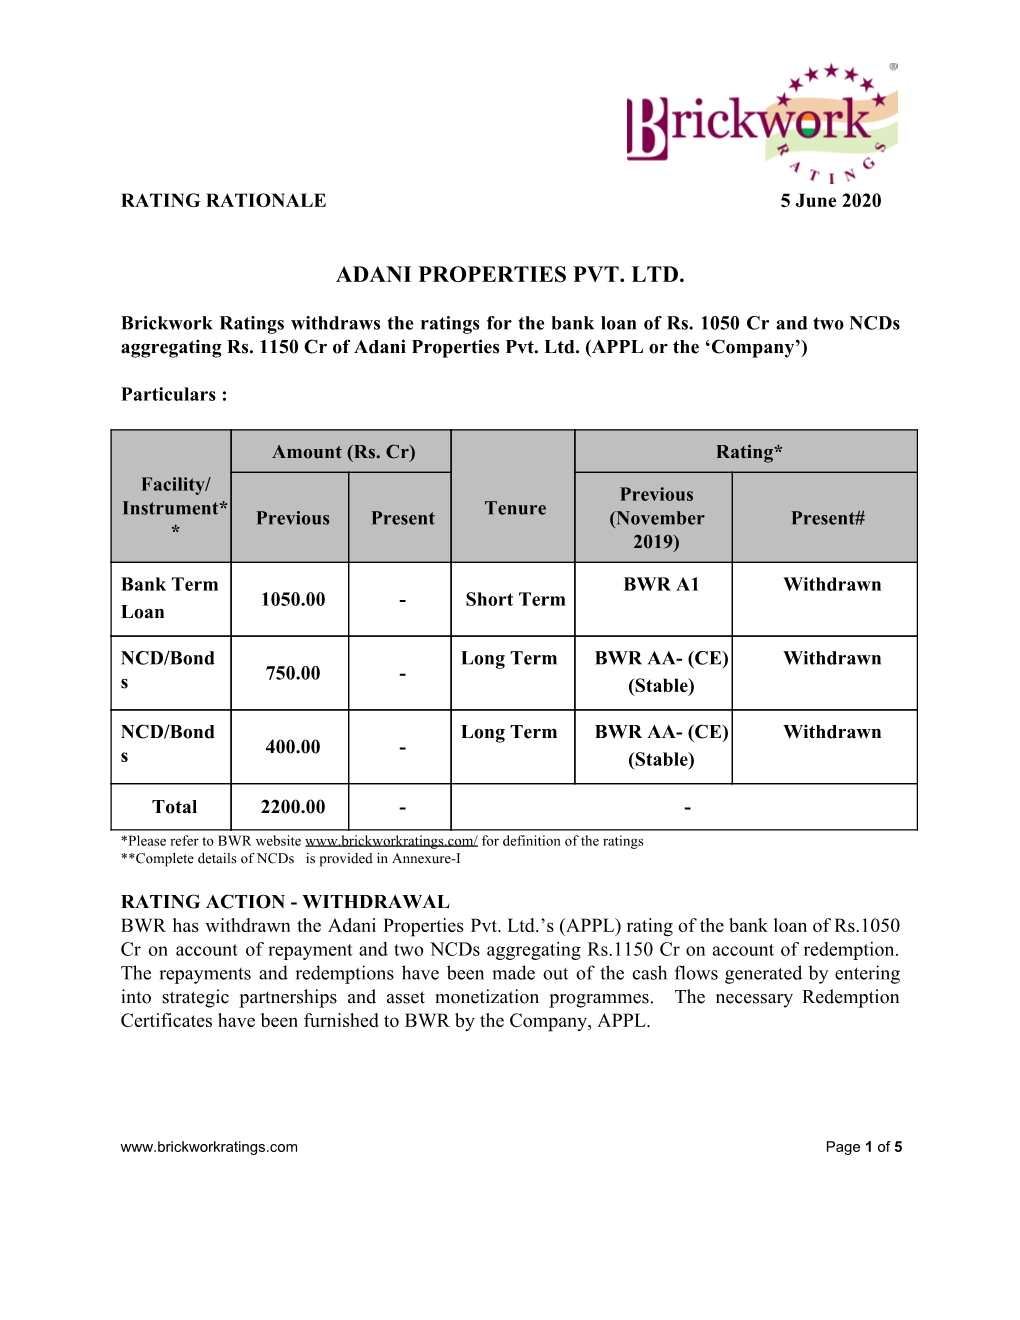 Adani Properties Pvt. Ltd